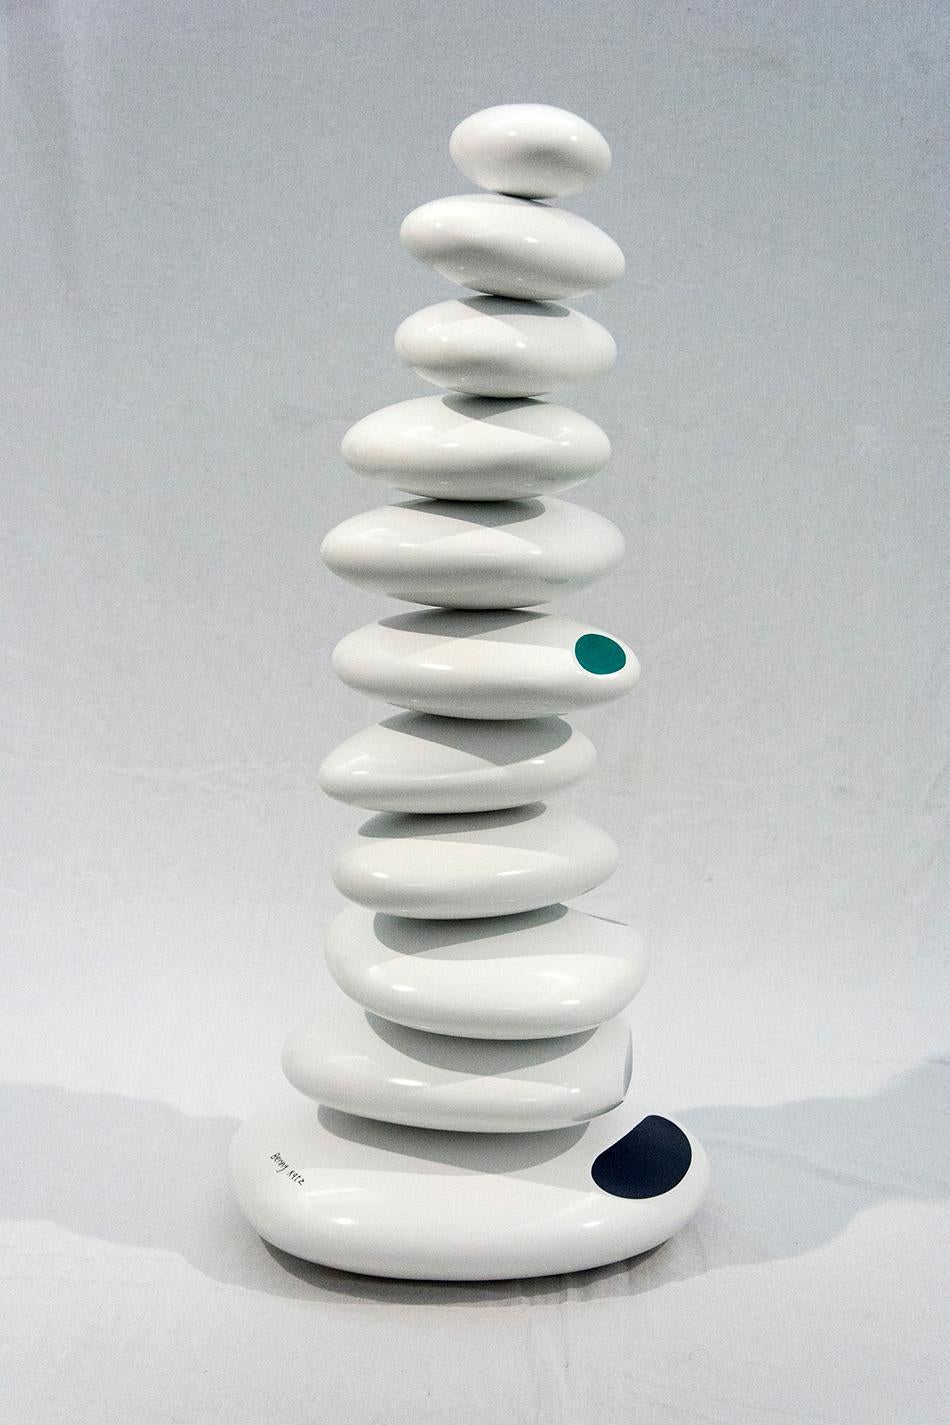 Ocean - kleine gestapelte Skulptur aus weißen Ovalen, mit blauen und grünen Akzenten – Sculpture von Benny Katz